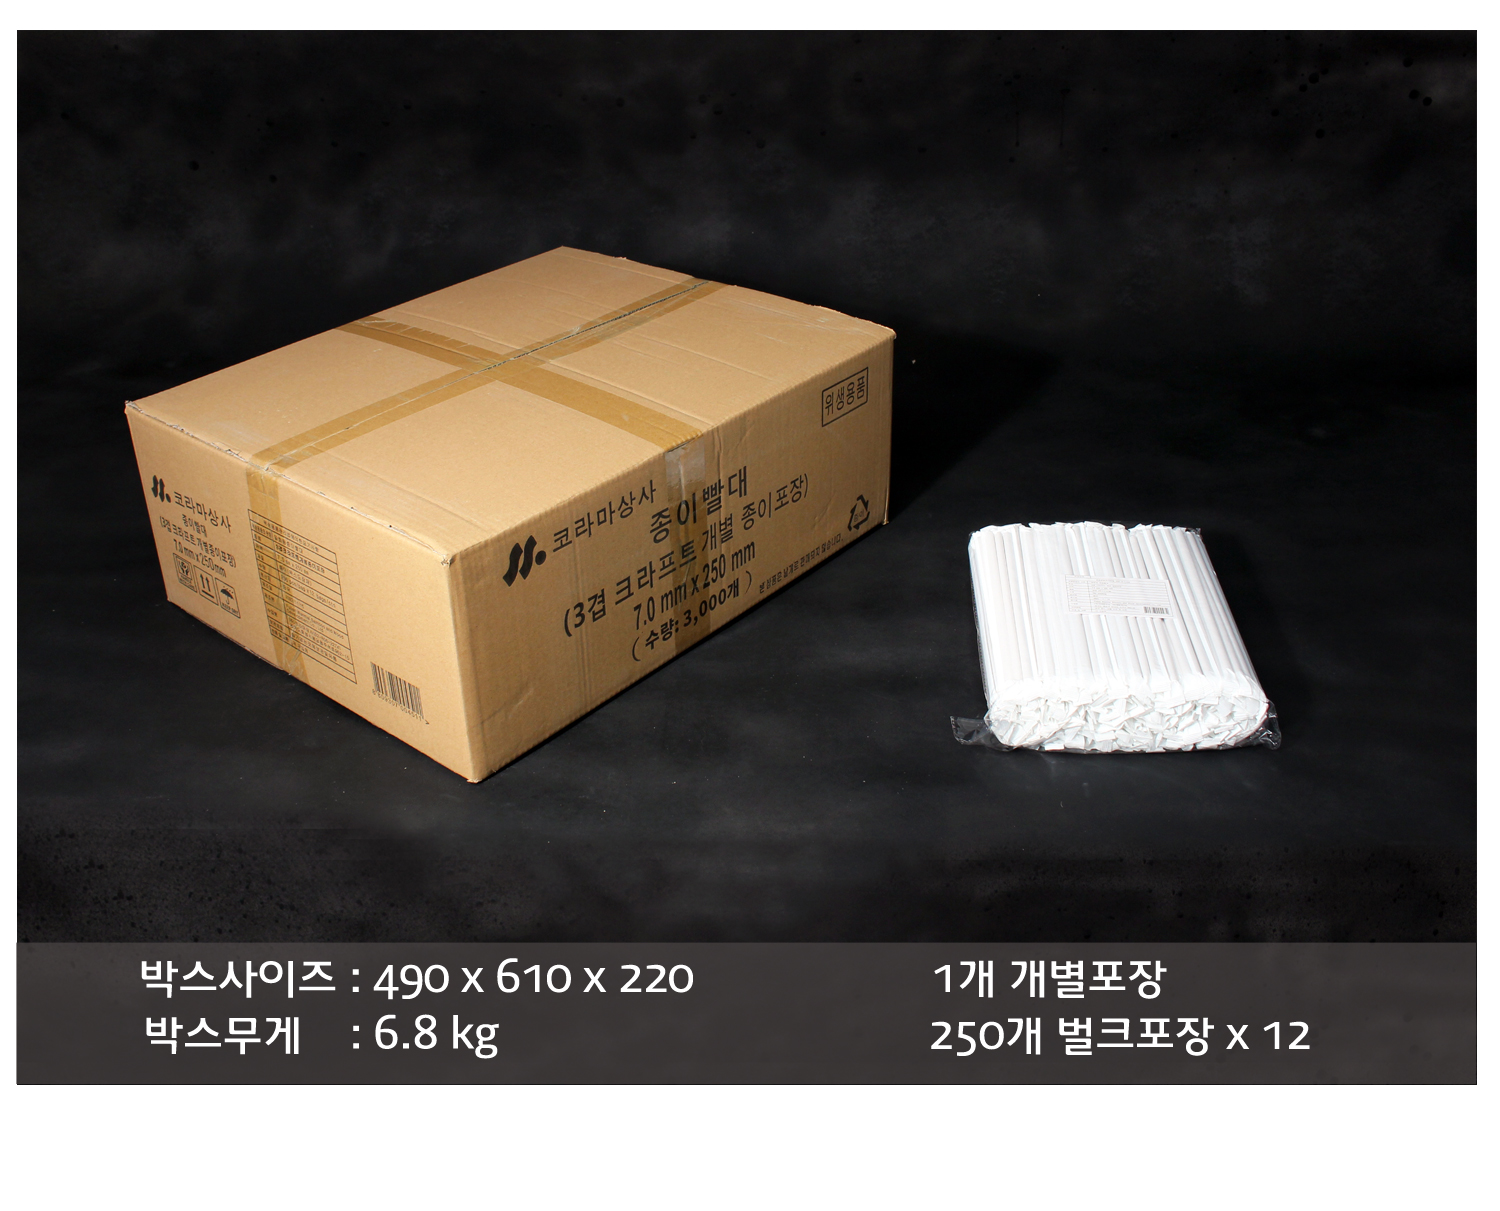 배송되는 박스의 사이즈와 무게가 표기된 이미지가 있다. 박스 내 소포장 단위의 묶음이 박스 옆에 놓여있다.